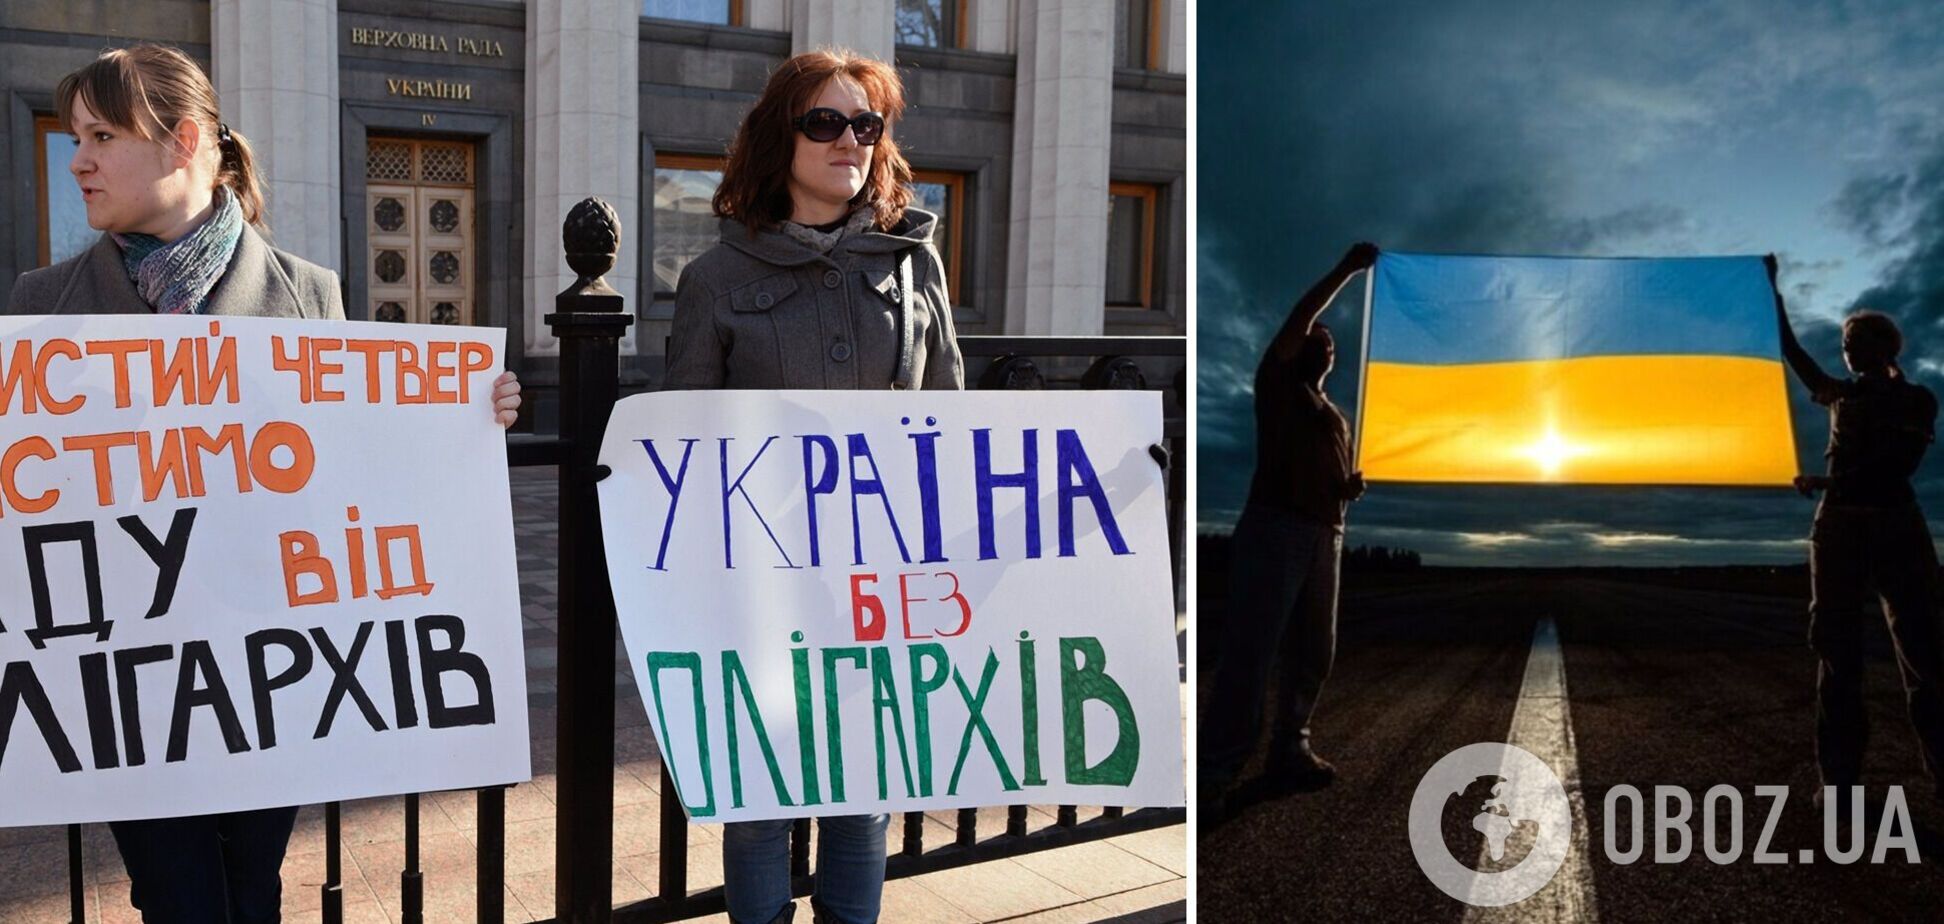 Після перемоги у війні олігархів в Україні не буде